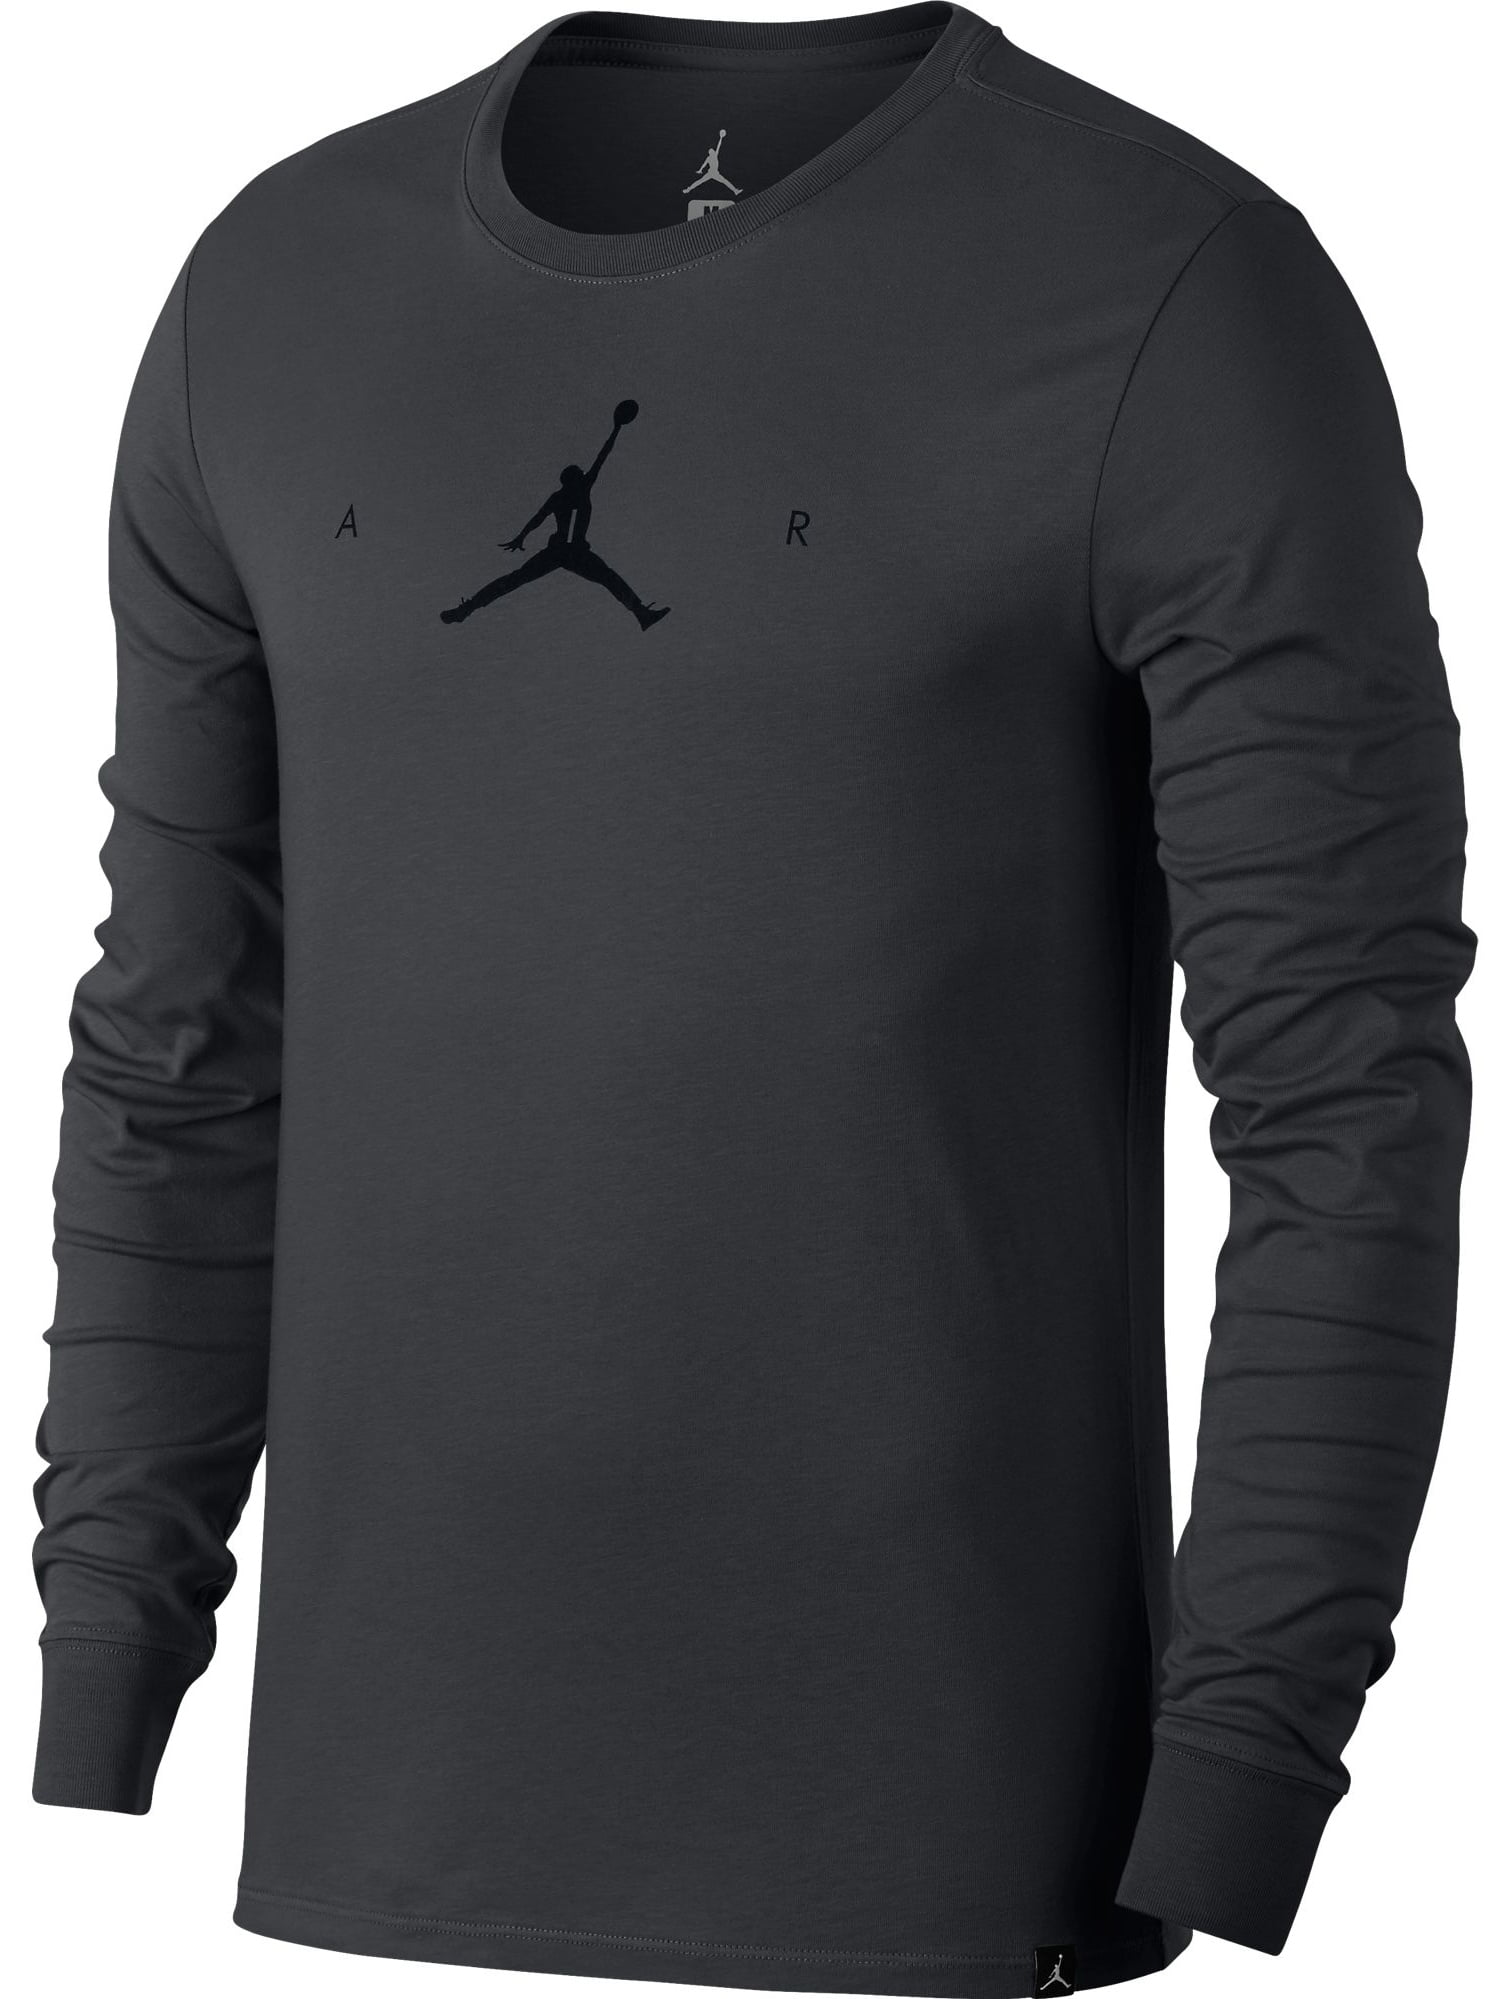 Jordan Dri-Fit Air Jumpman Longsleeve Men's T-Shirt Grey/Black 878386 ...